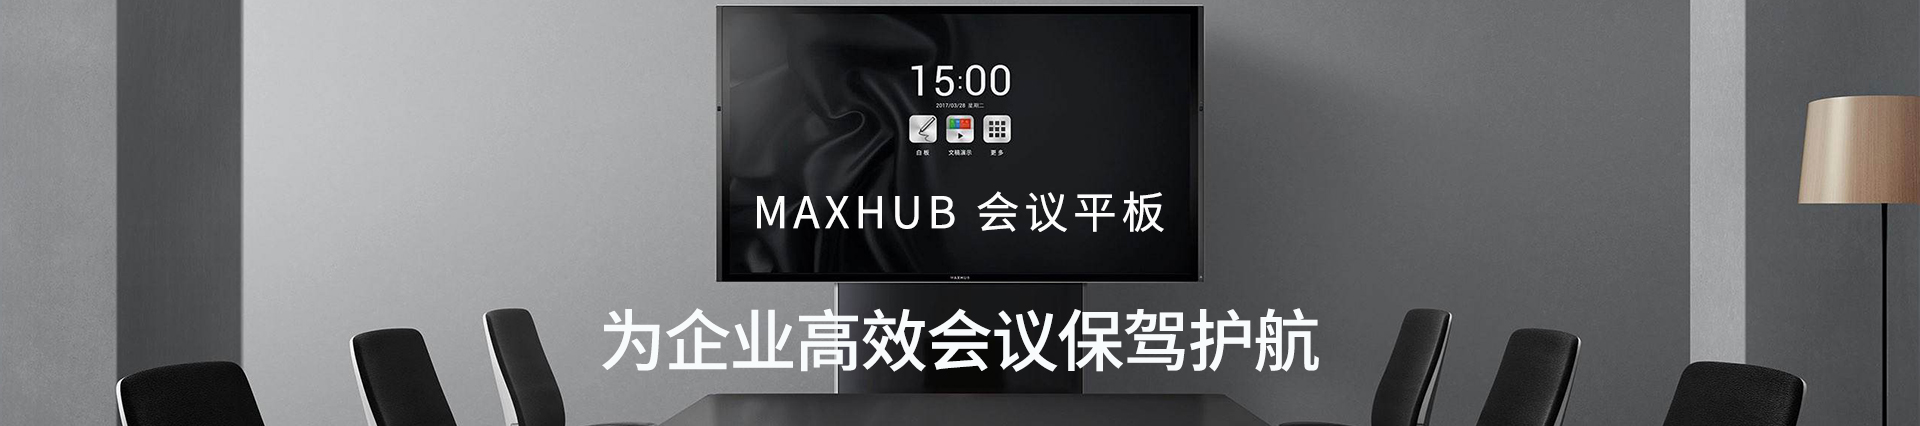 MAXHUB高效会议平板